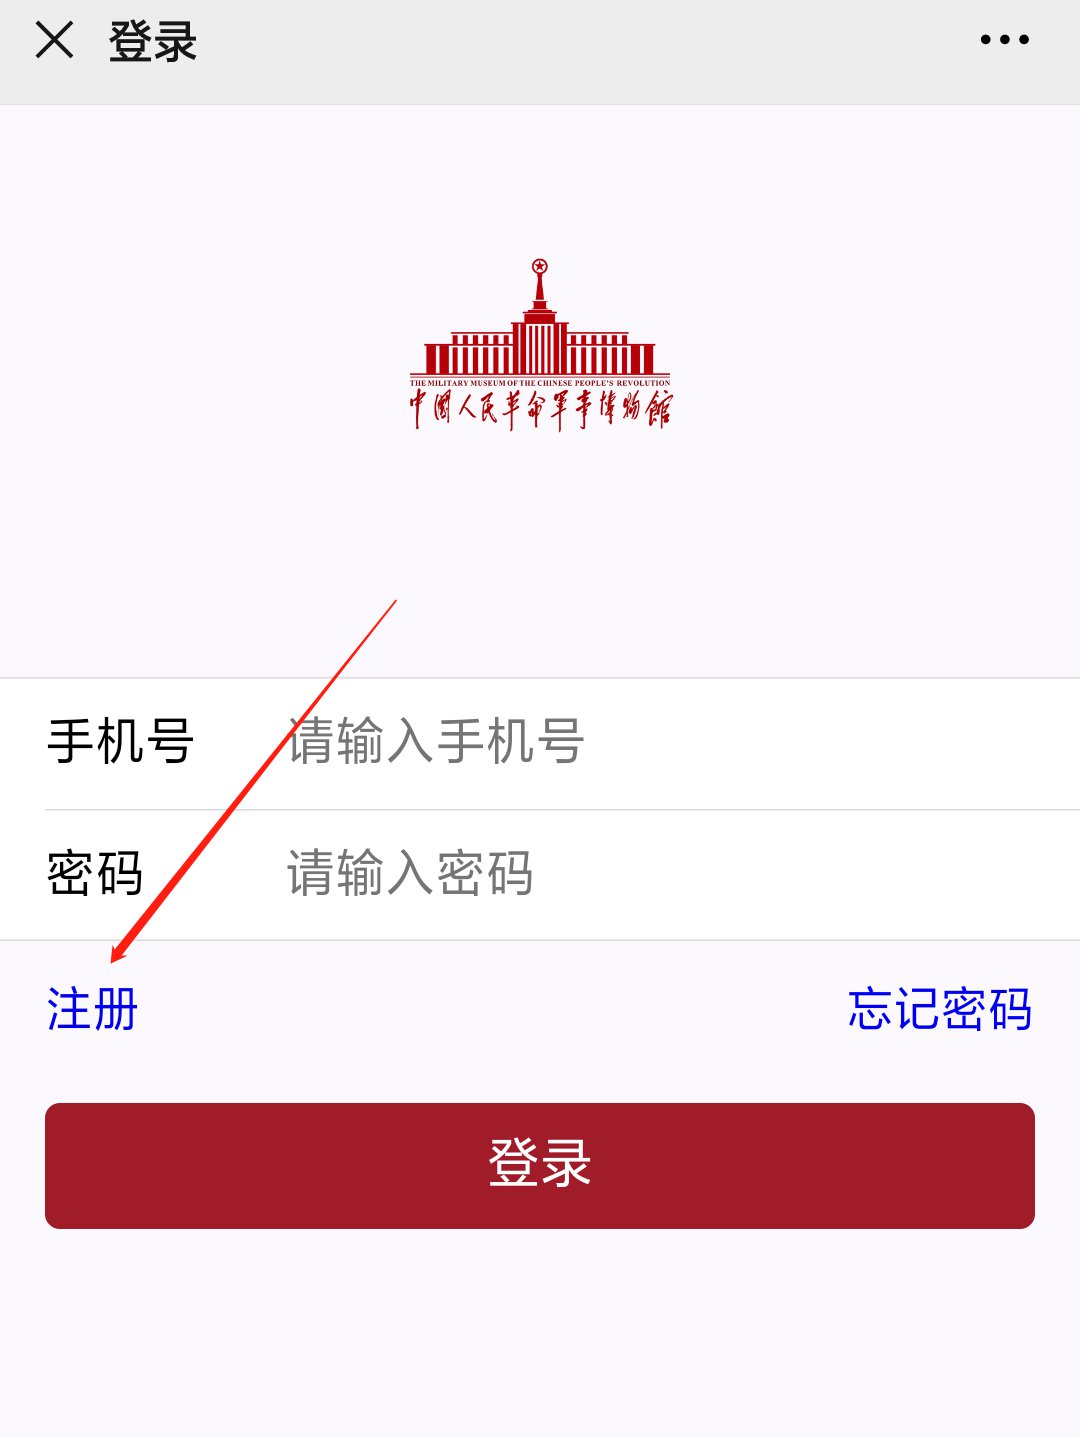 北京军事博物馆预约流程(公众号版)